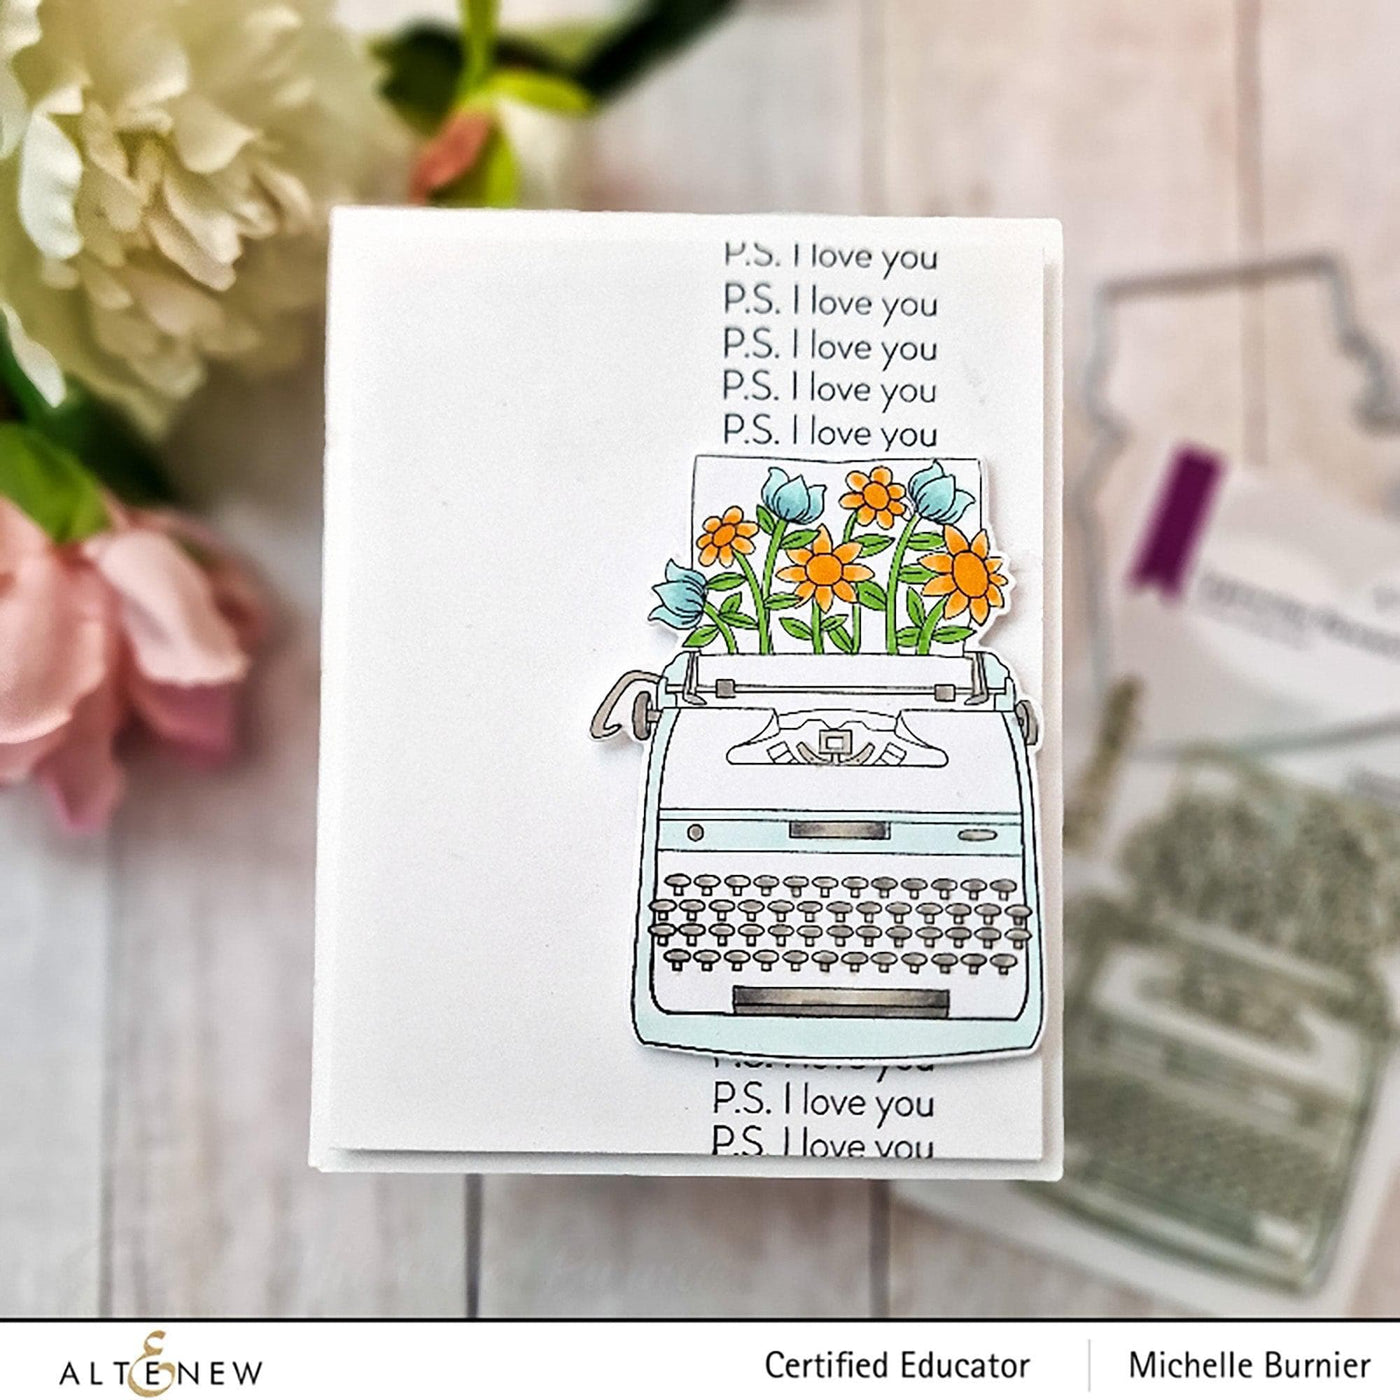 Altenew Stamp & Die Bundle Typewriter Flowers Stamp & Die Bundle